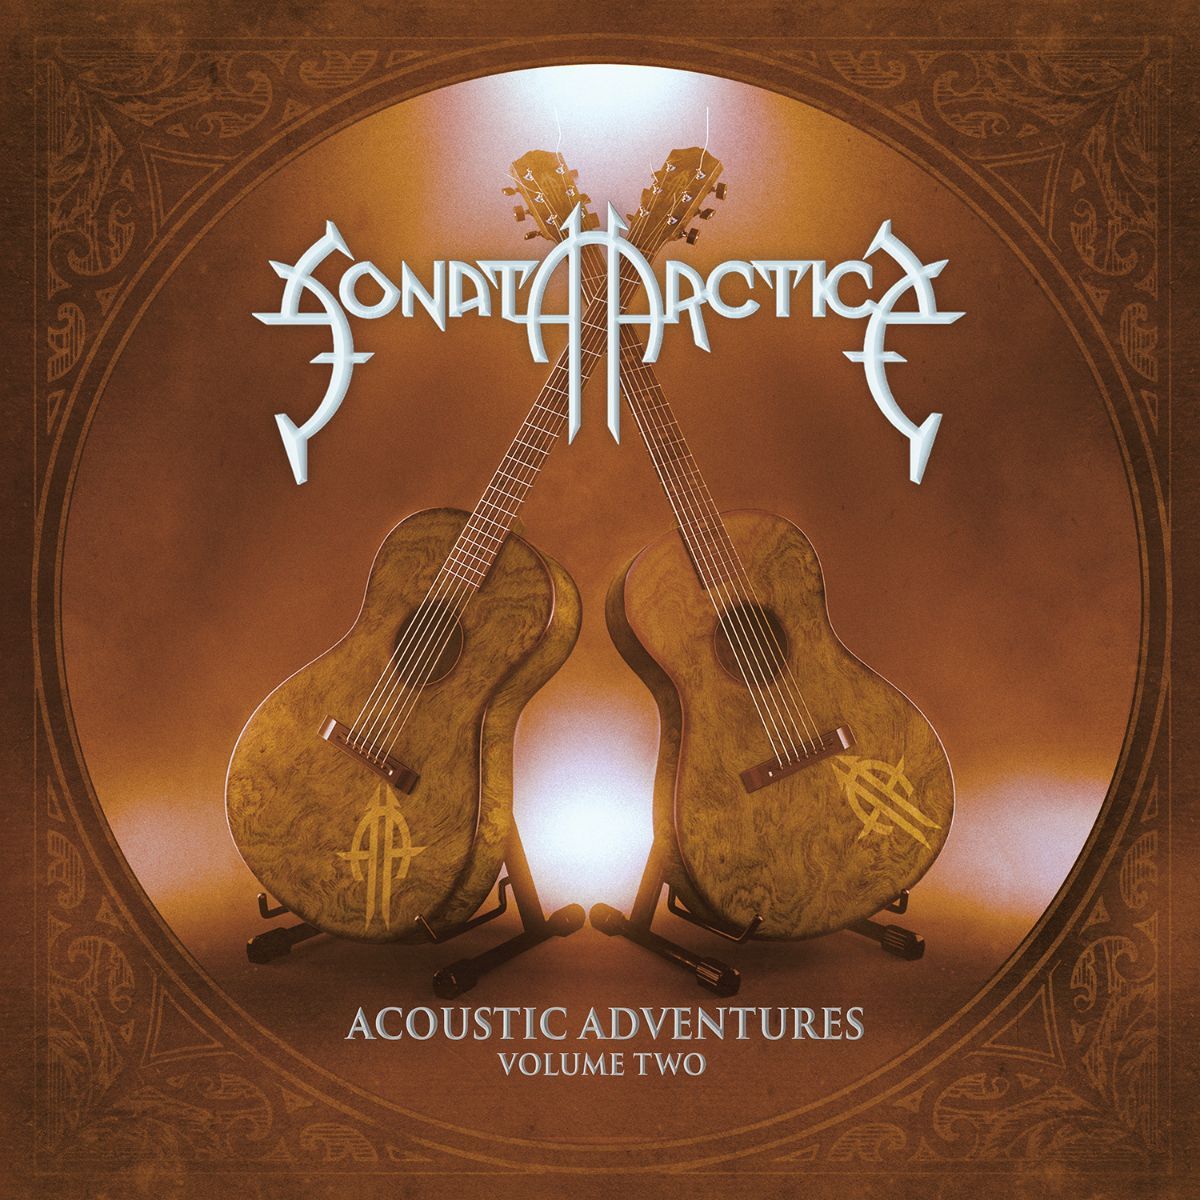 'I Have A Right'-Single von "Acoustic Adventures - Volume Two" veröffentlicht